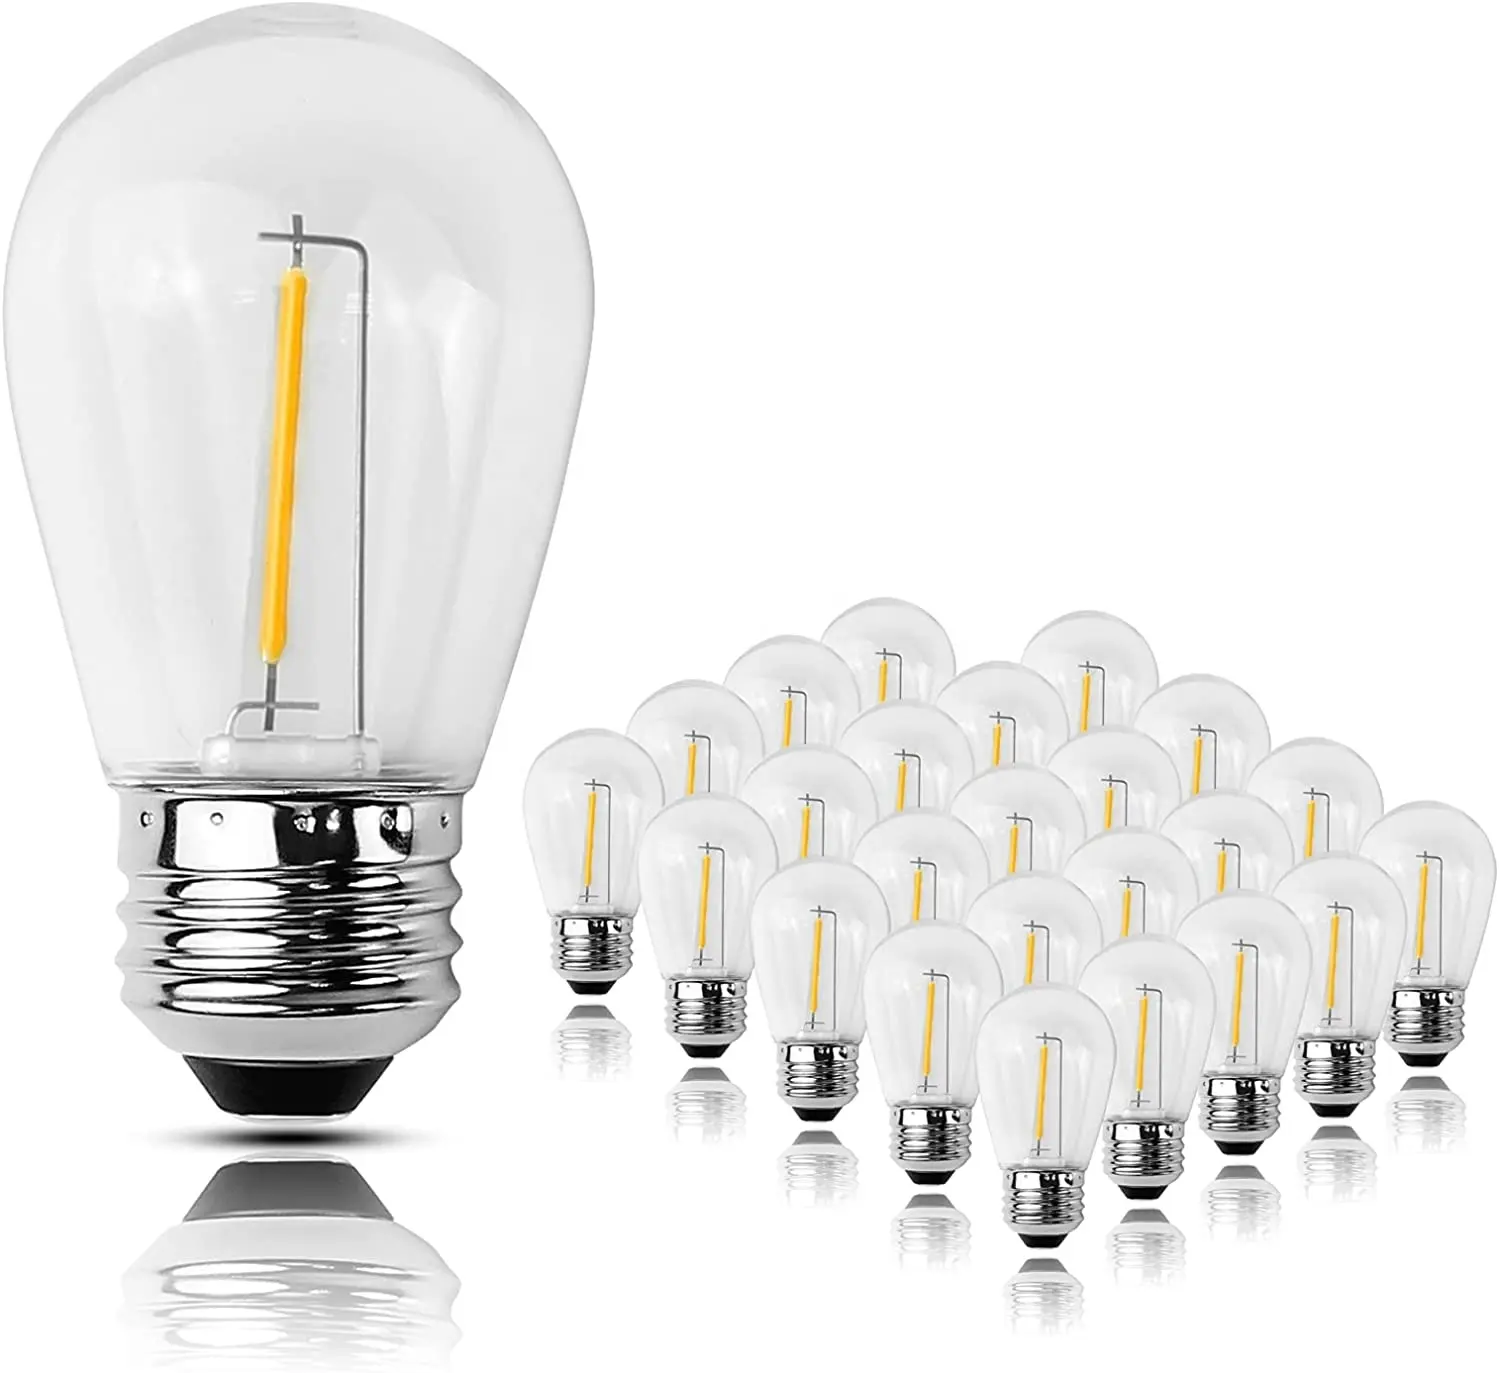 Nuovo prodotto 0.3W 1W lampada a Led lampadina trasparente in plastica copertura luce calda S14 E27 lampadina